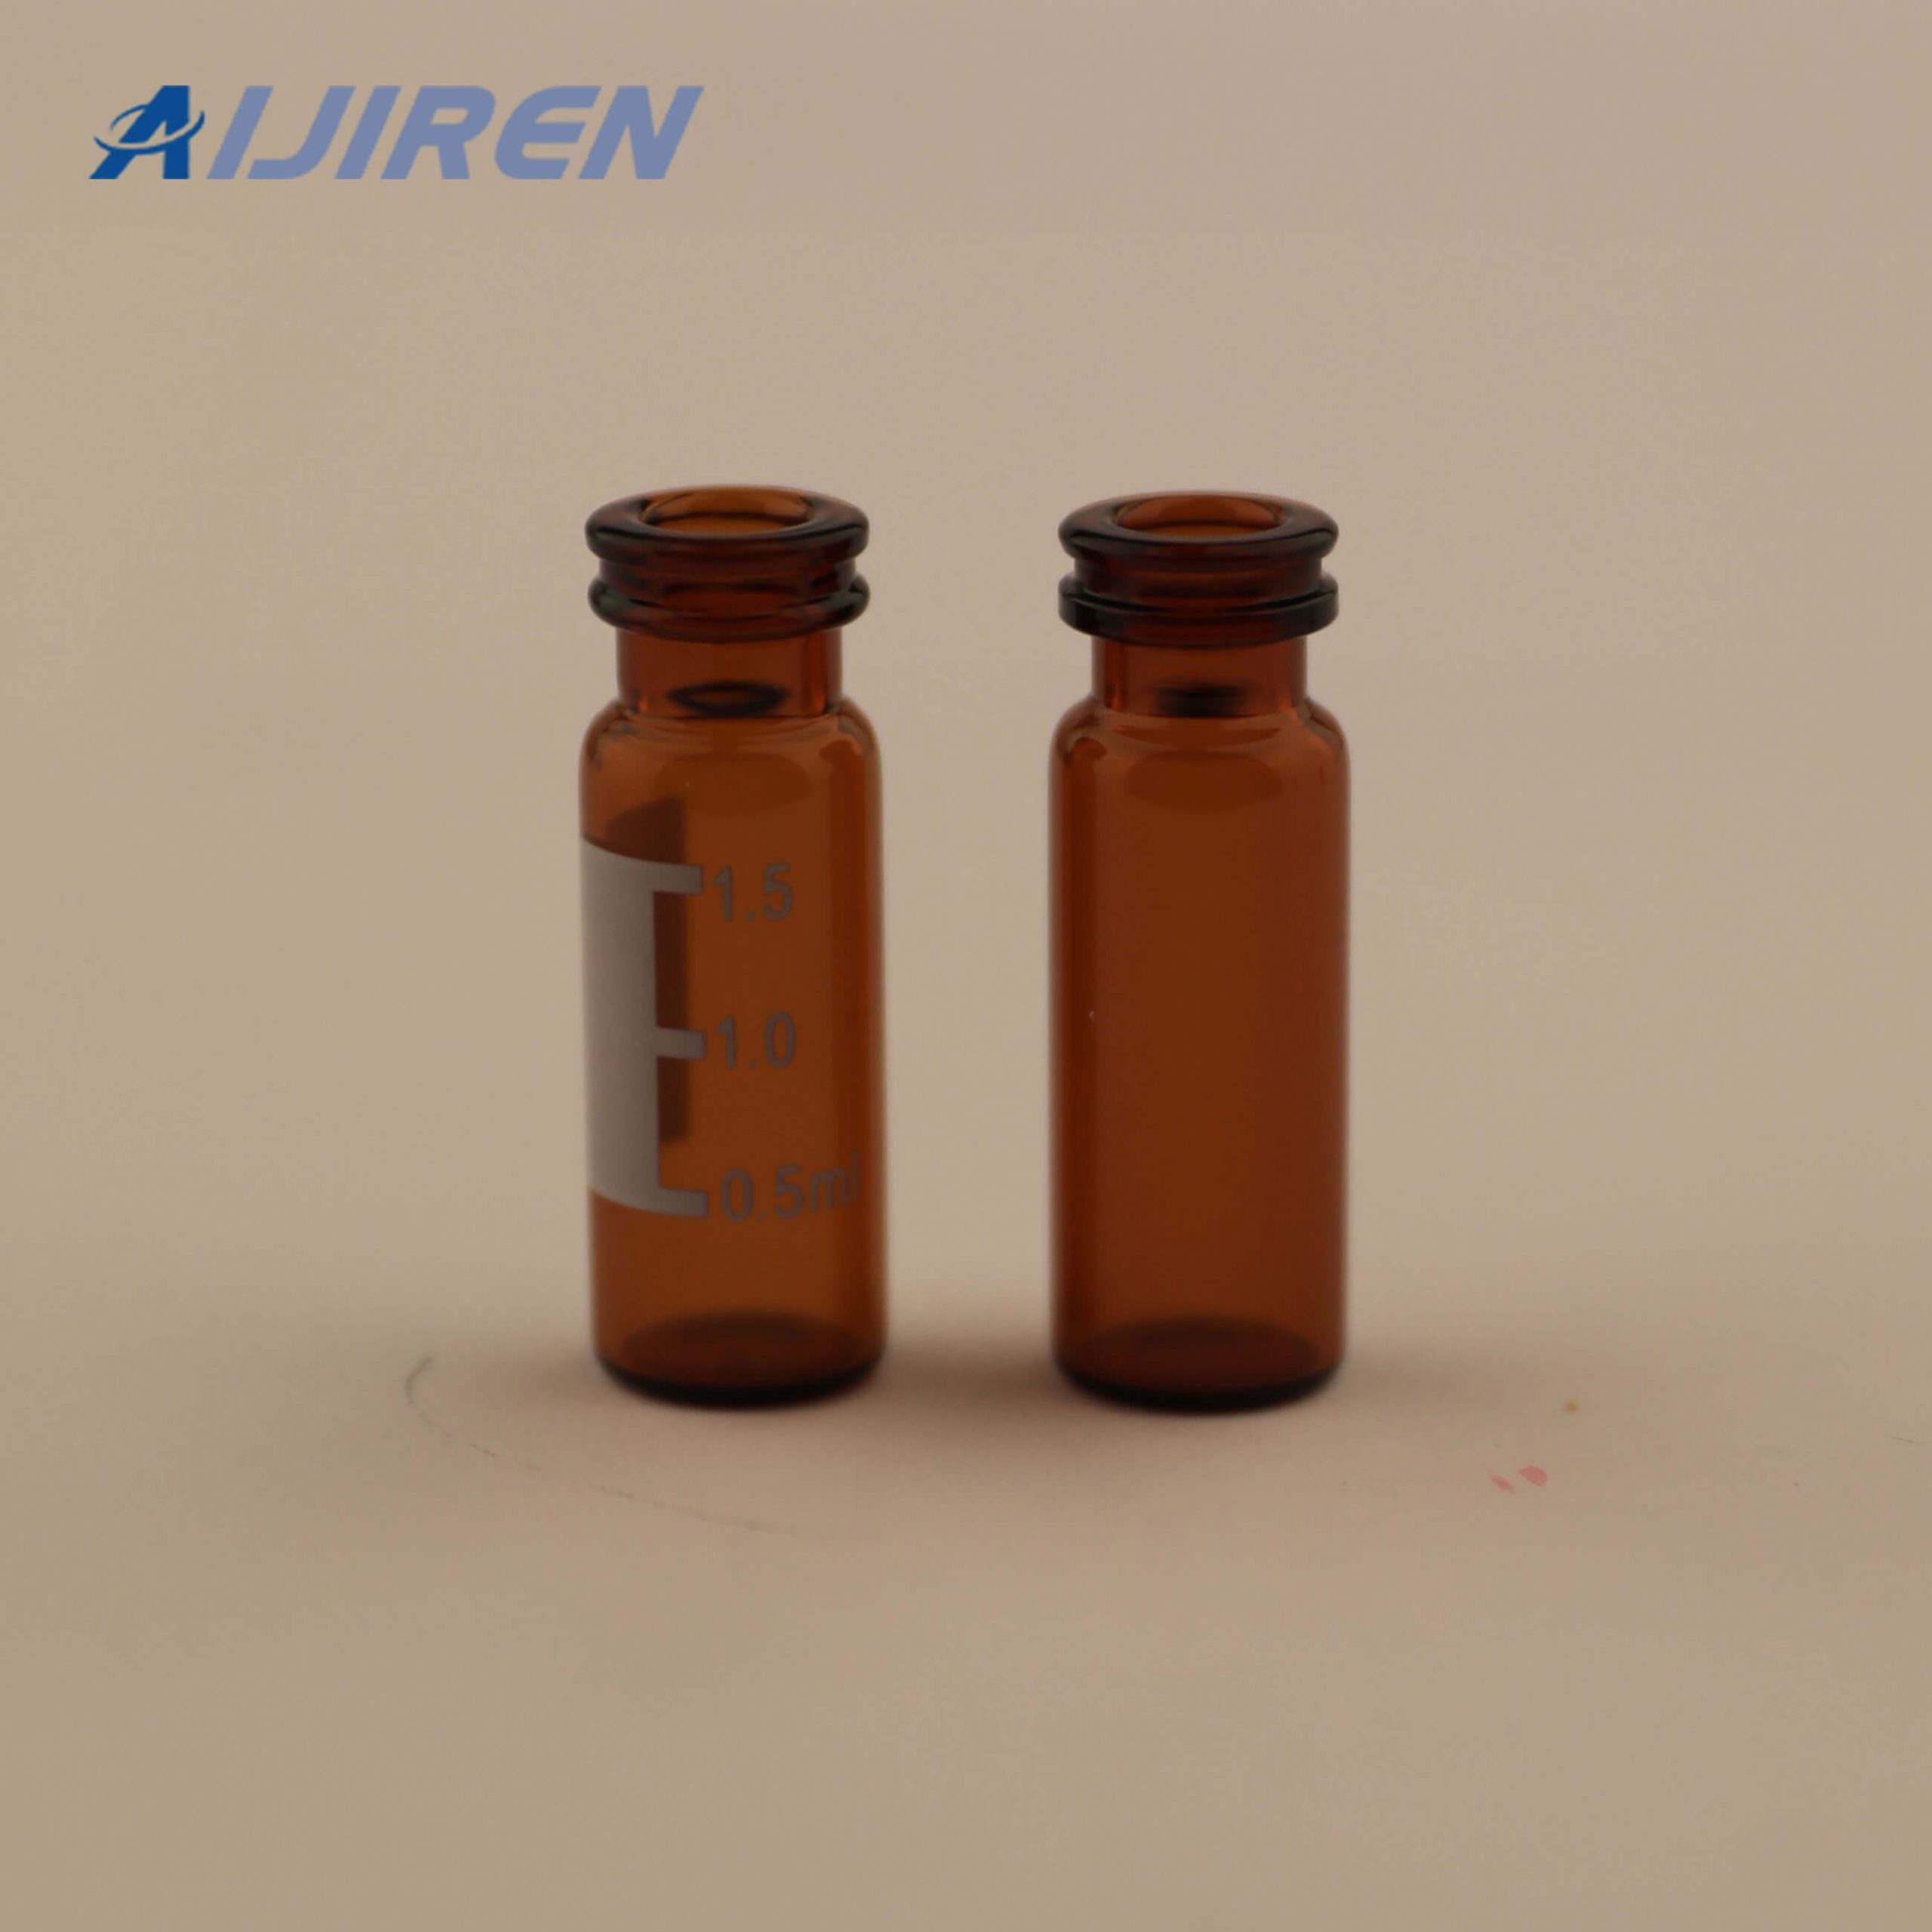 11mm Snap Cap Vials for Aijiren